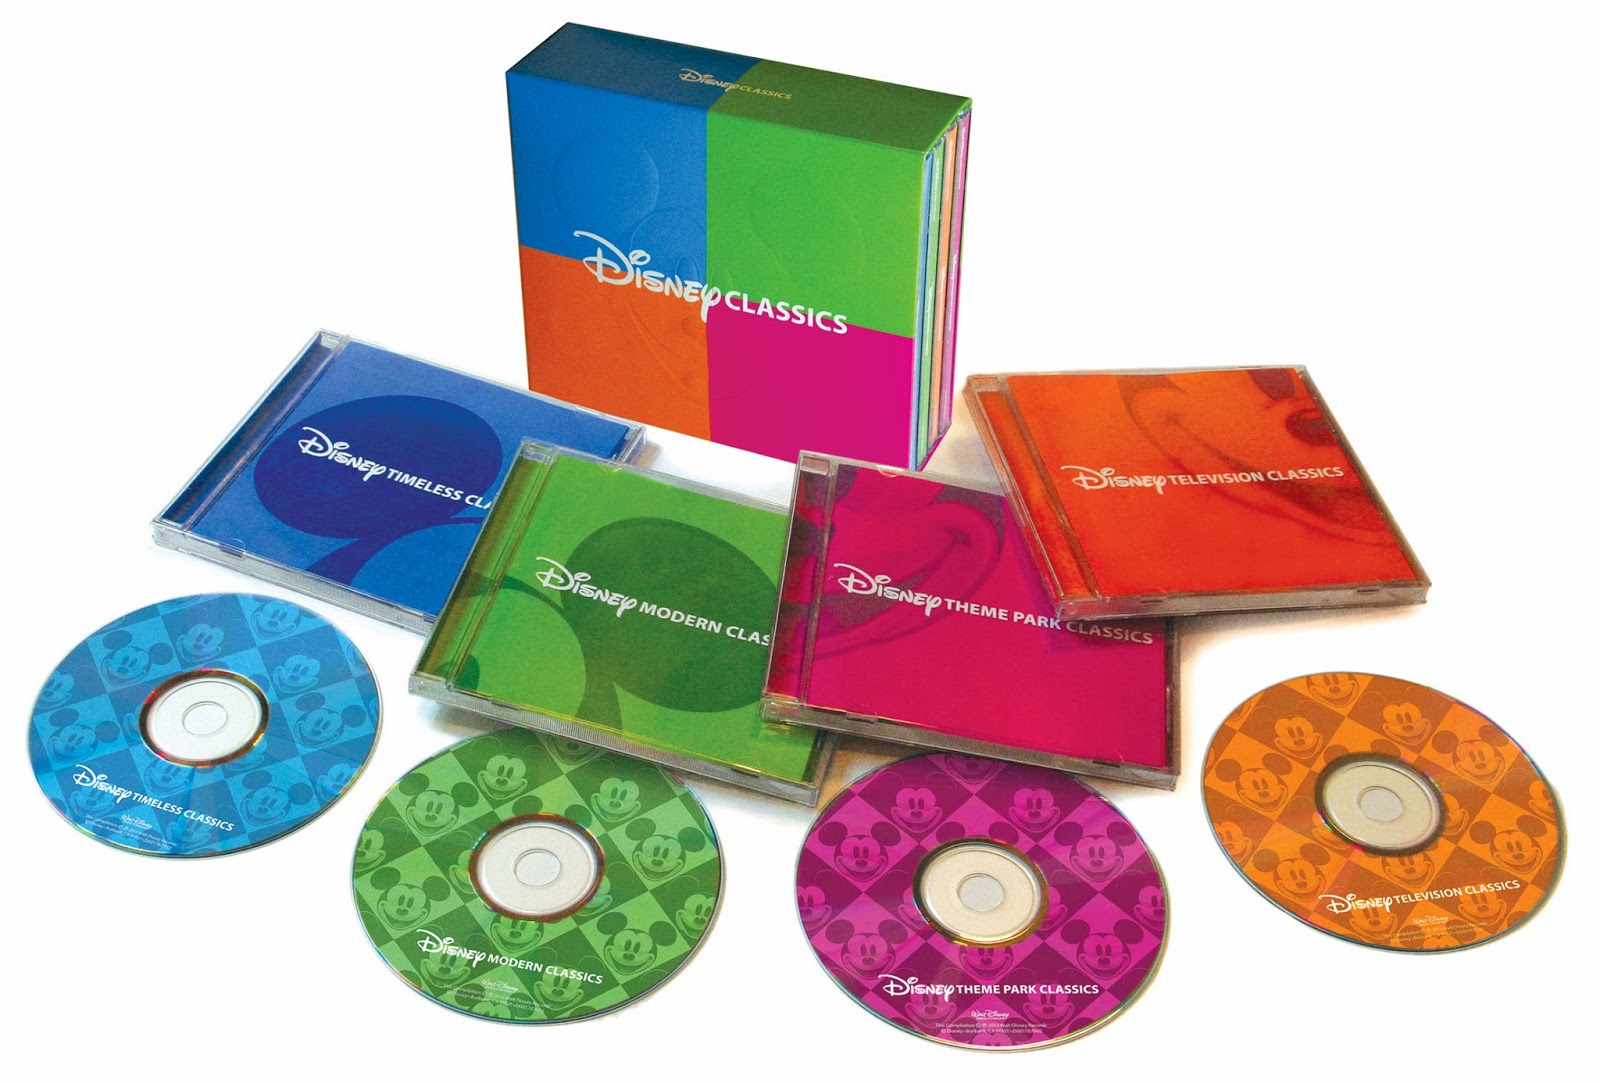 Classic cd. Classics Box Set. Classic Disney Music. Music Box диски. Disney Classics Disc 1: Modern Classics.